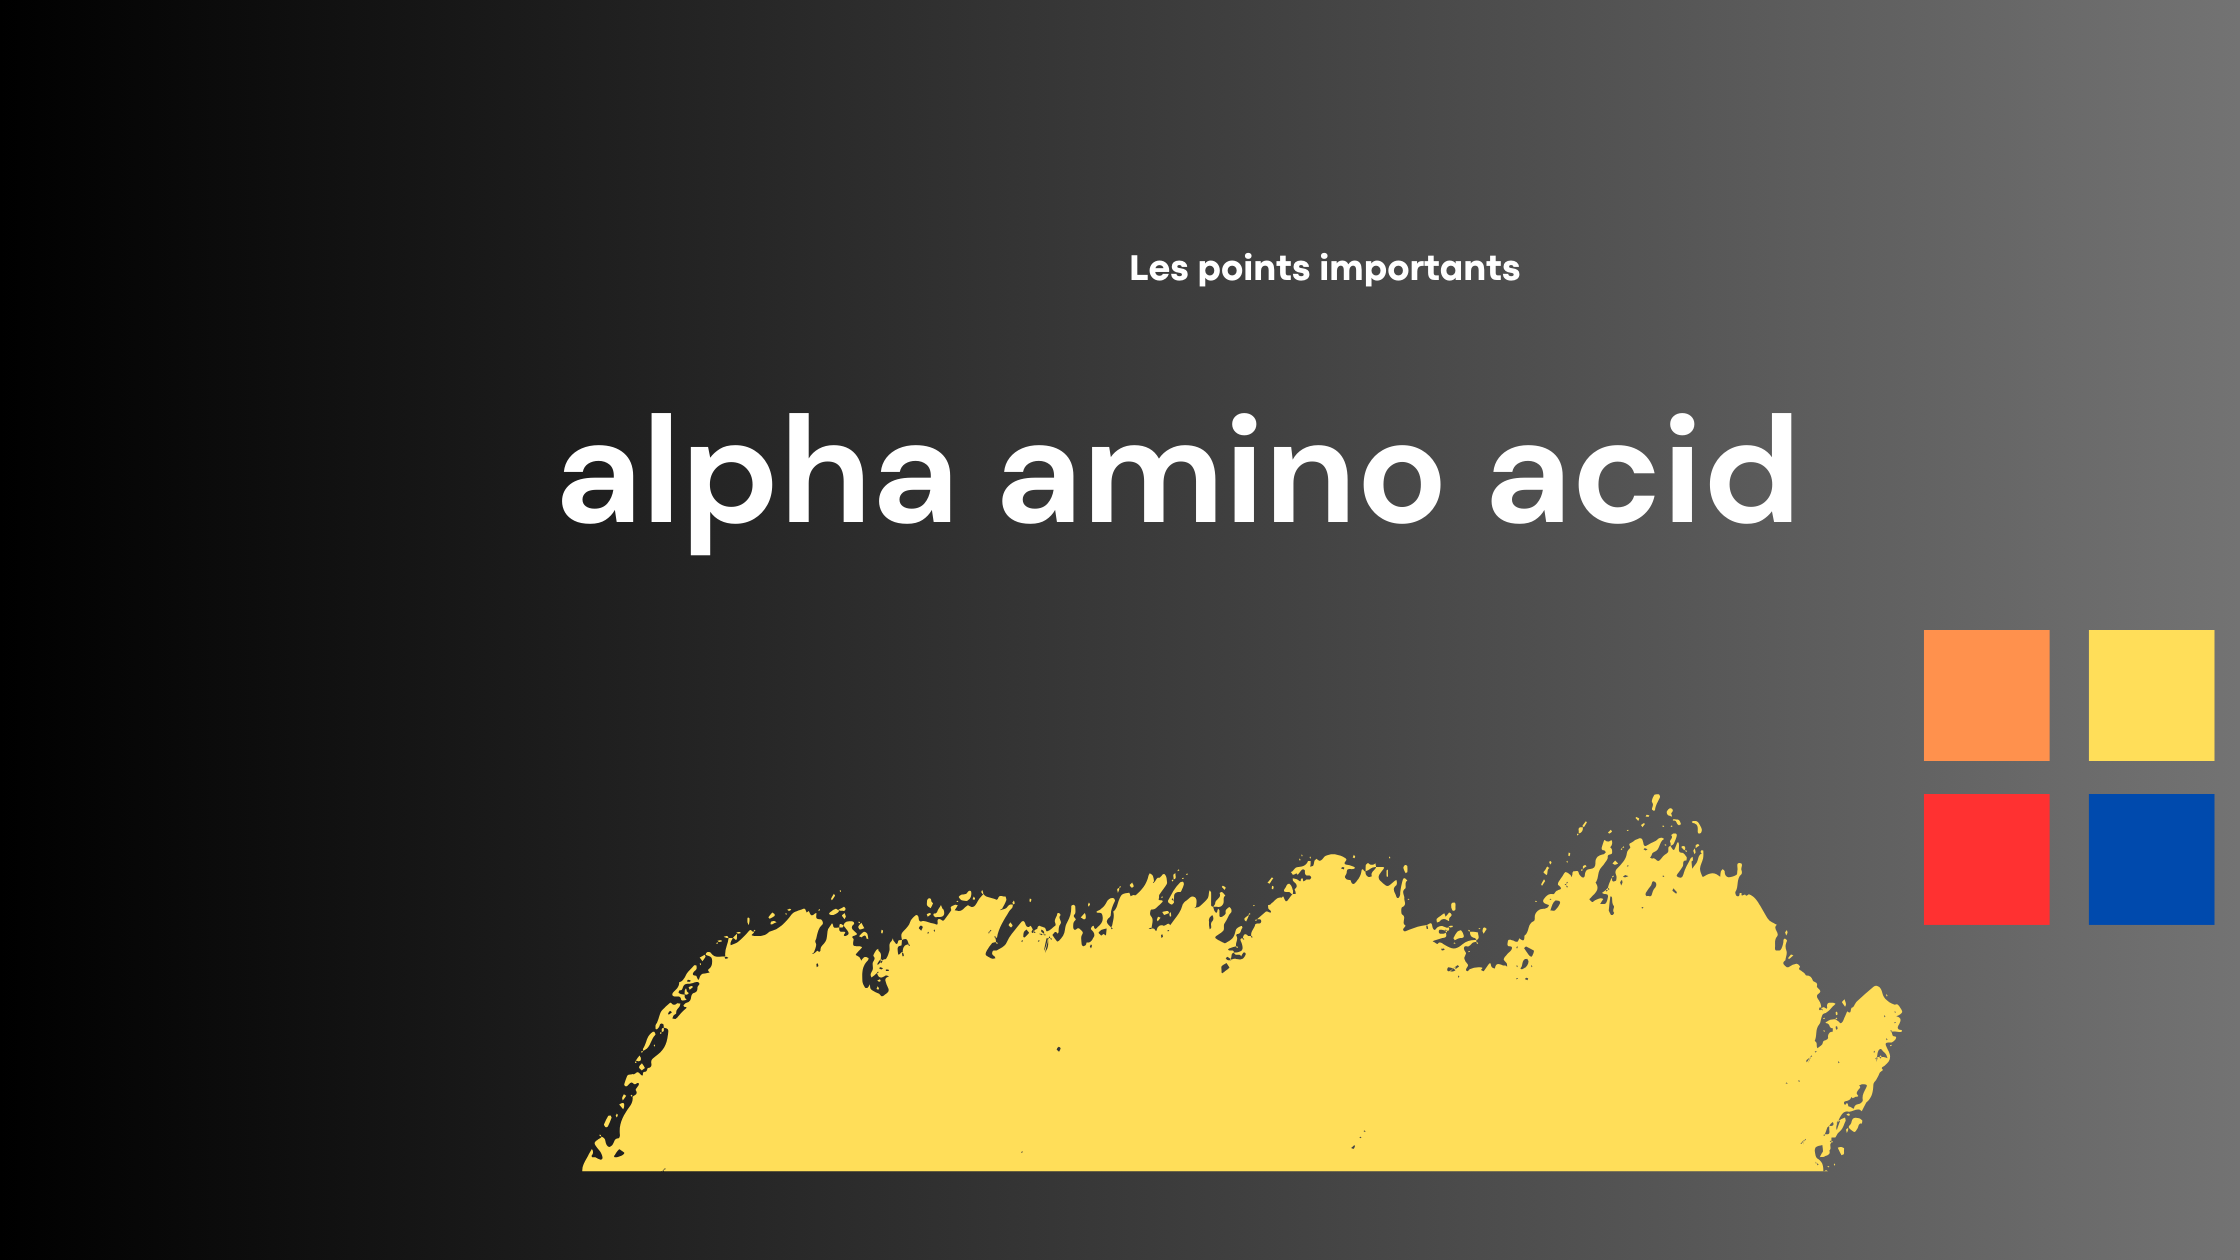 alpha amino acid | Les points importants